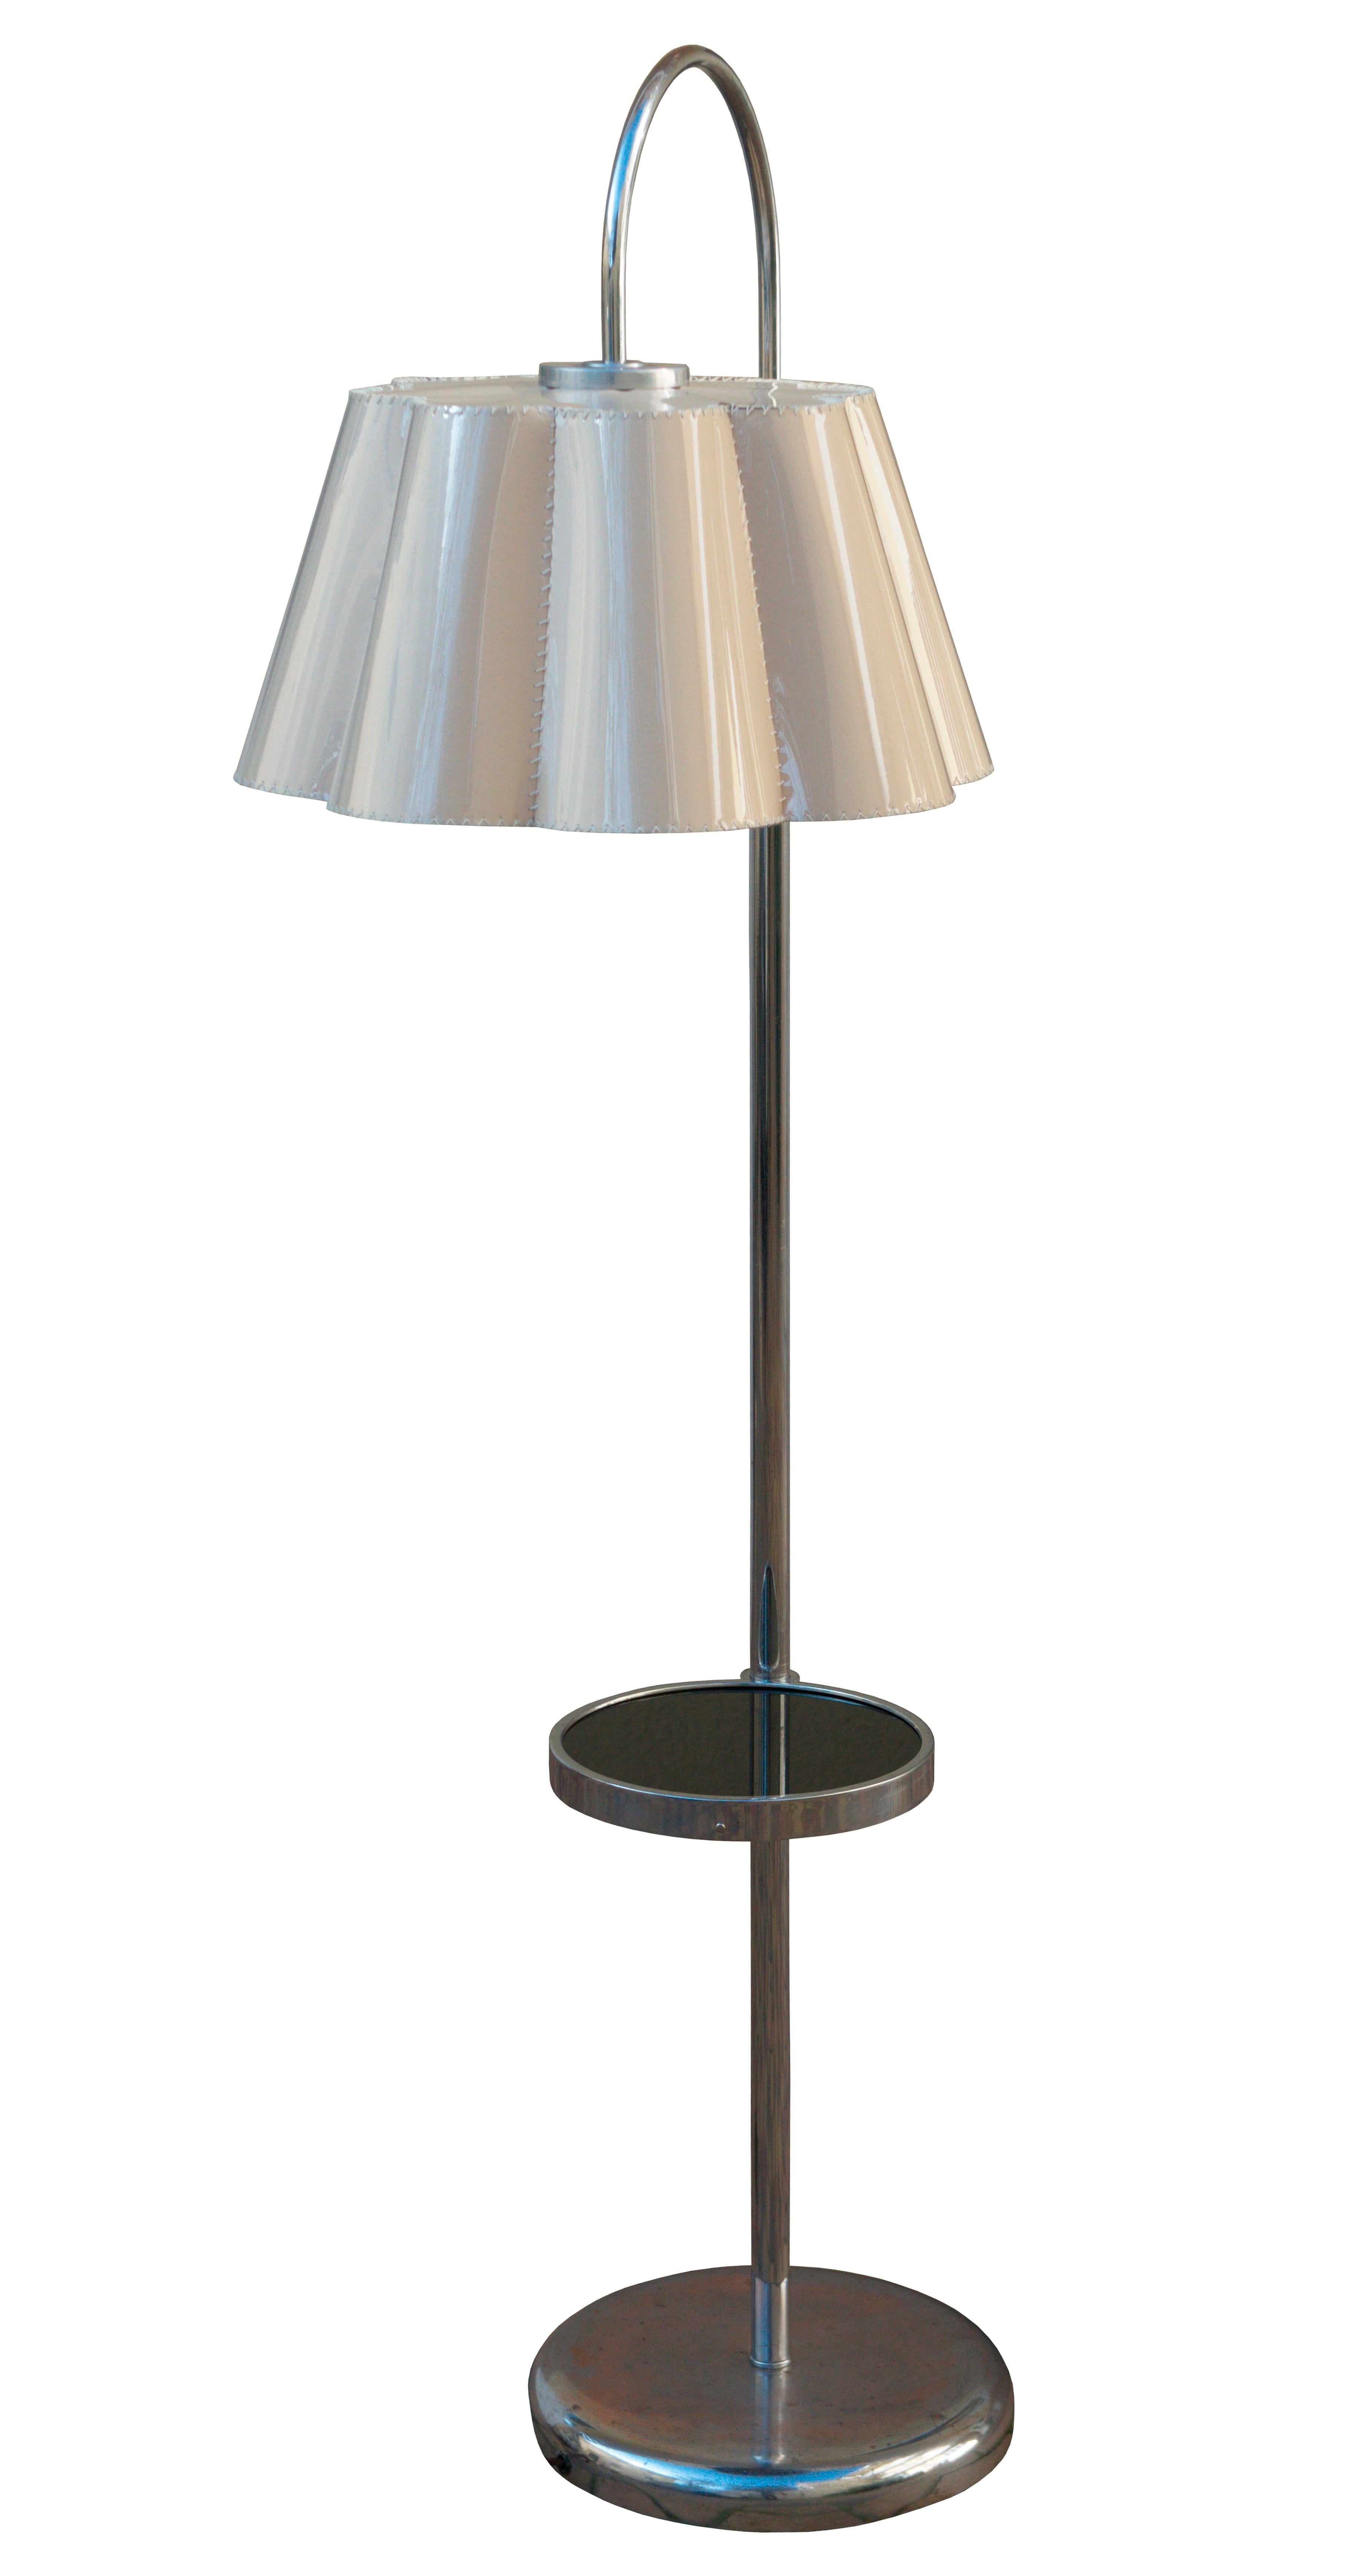 Ce lampadaire moderniste a été conçu et produit par la société NAPAKO dans les années 1930 en Tchécoslovaquie. 

Cette pièce représente parfaitement l'approche moderniste de la conception de meubles. Il est minimaliste, fonctionnel et élégant ; un